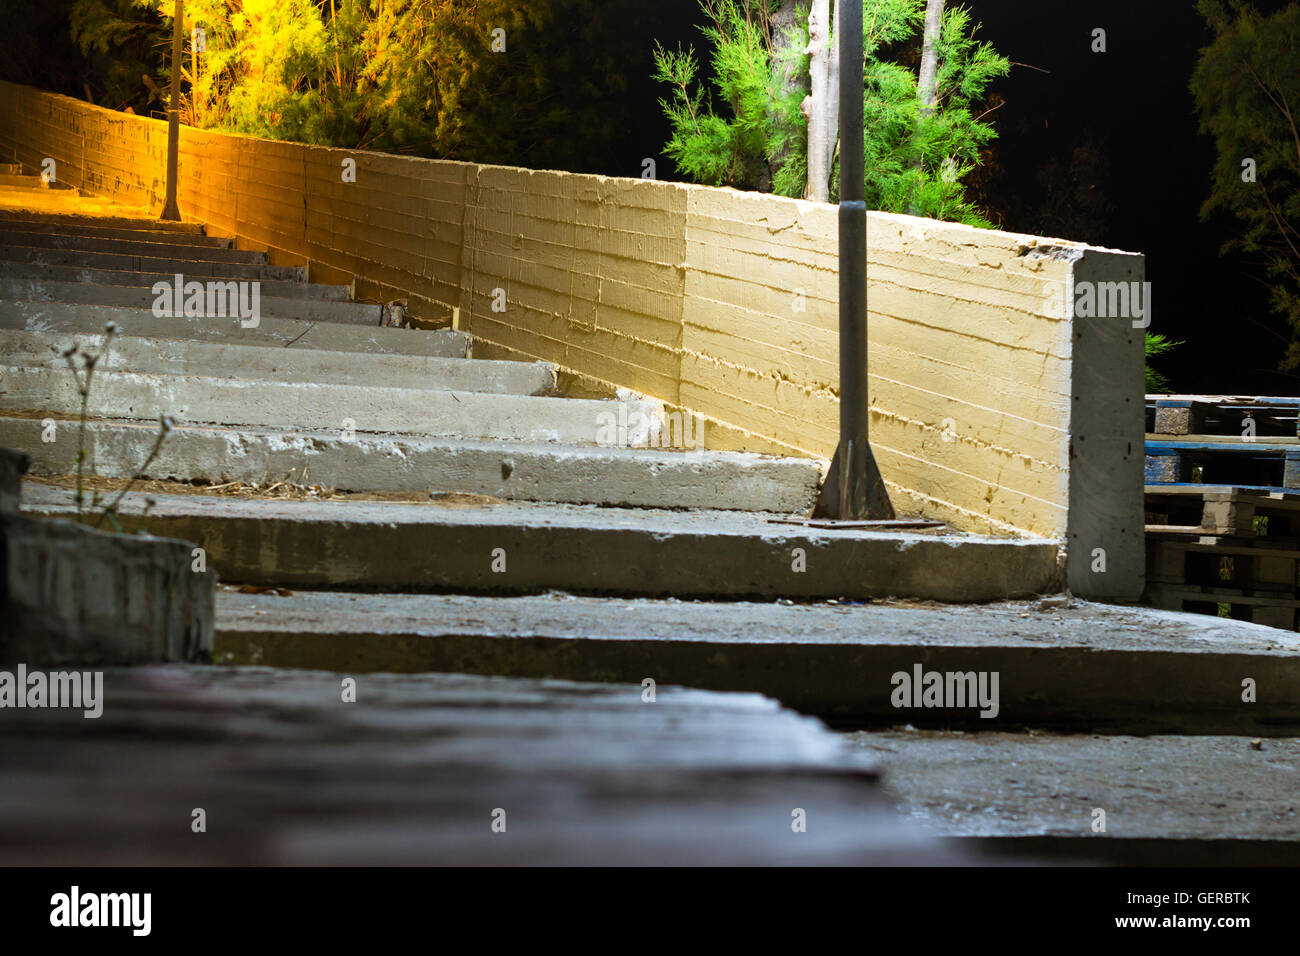 Ancien escalier en béton de la rue, éclairé par les feux de route. Calme sombre dans la nuit solitaire resort village méditerranéen. Bali, Grèce Banque D'Images